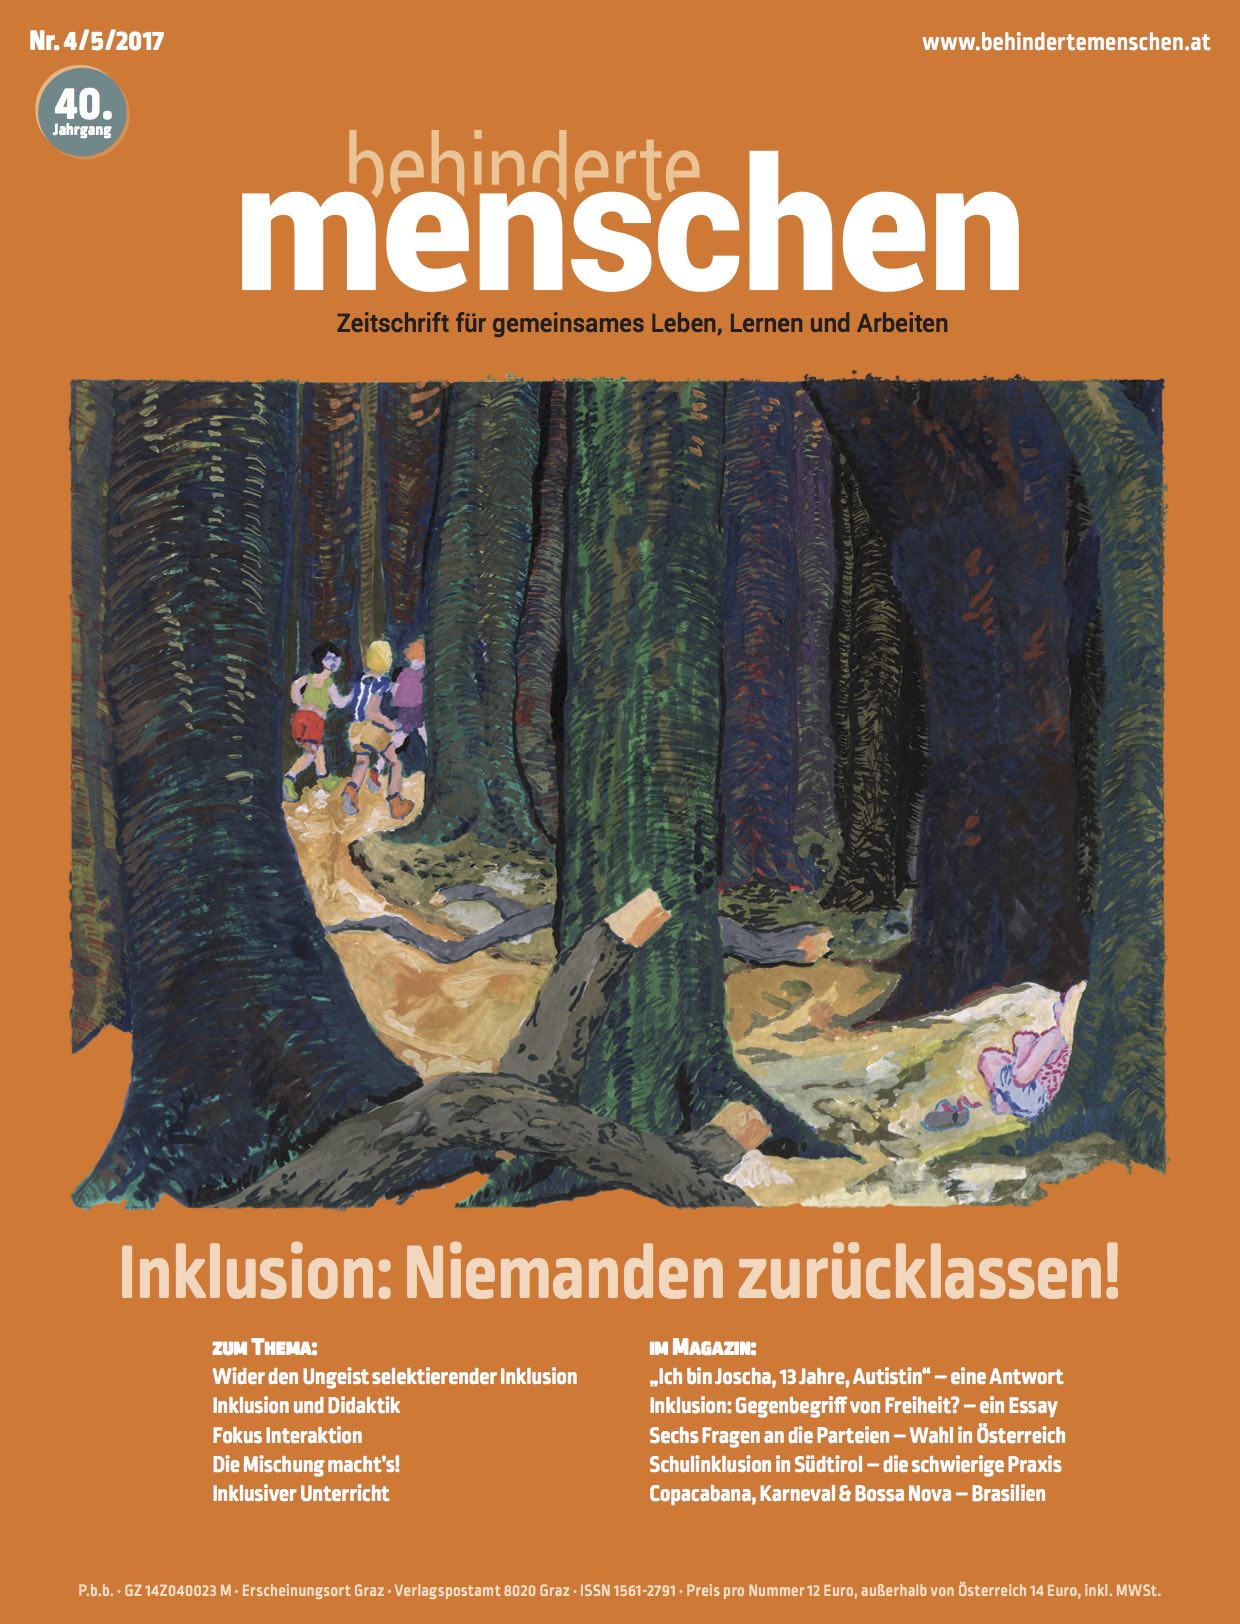 Titelbild der Zeitschrift BEHINDERTE MENSCHEN, Ausgabe 4/5/2017 "Inklusion: Niemanden zurücklassen!"